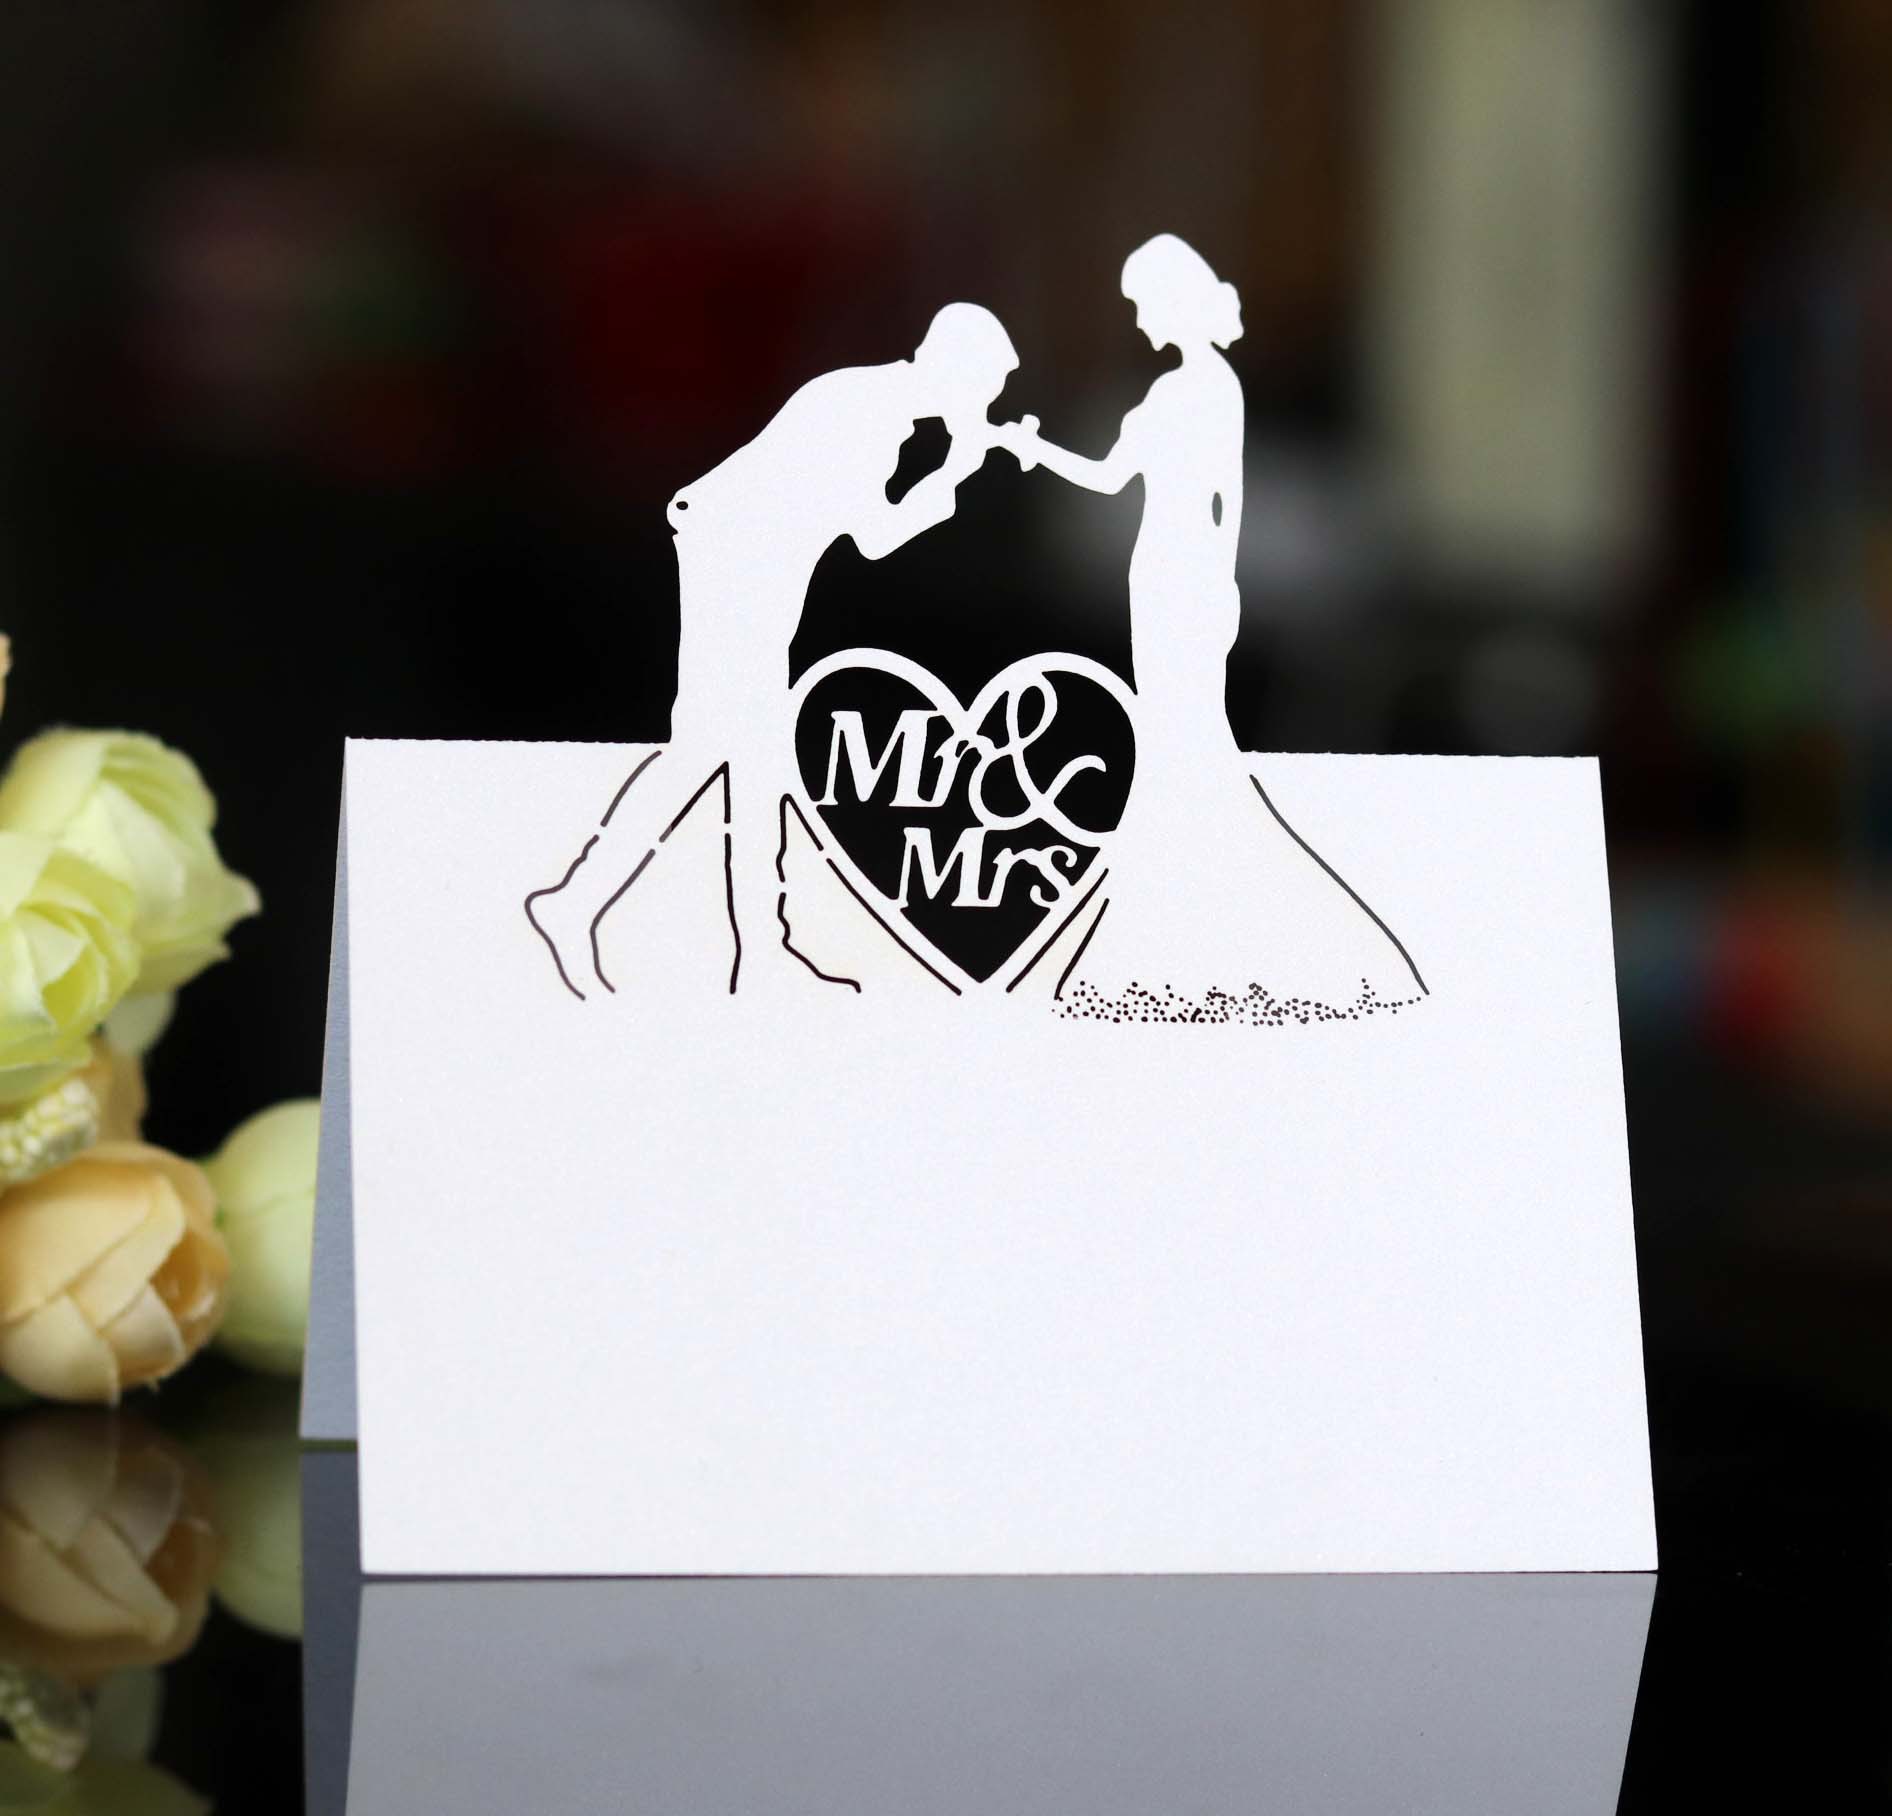 现货订婚爱心结婚席位卡 镂空签到卡 婚礼桌位卡钻石MS MRS台卡